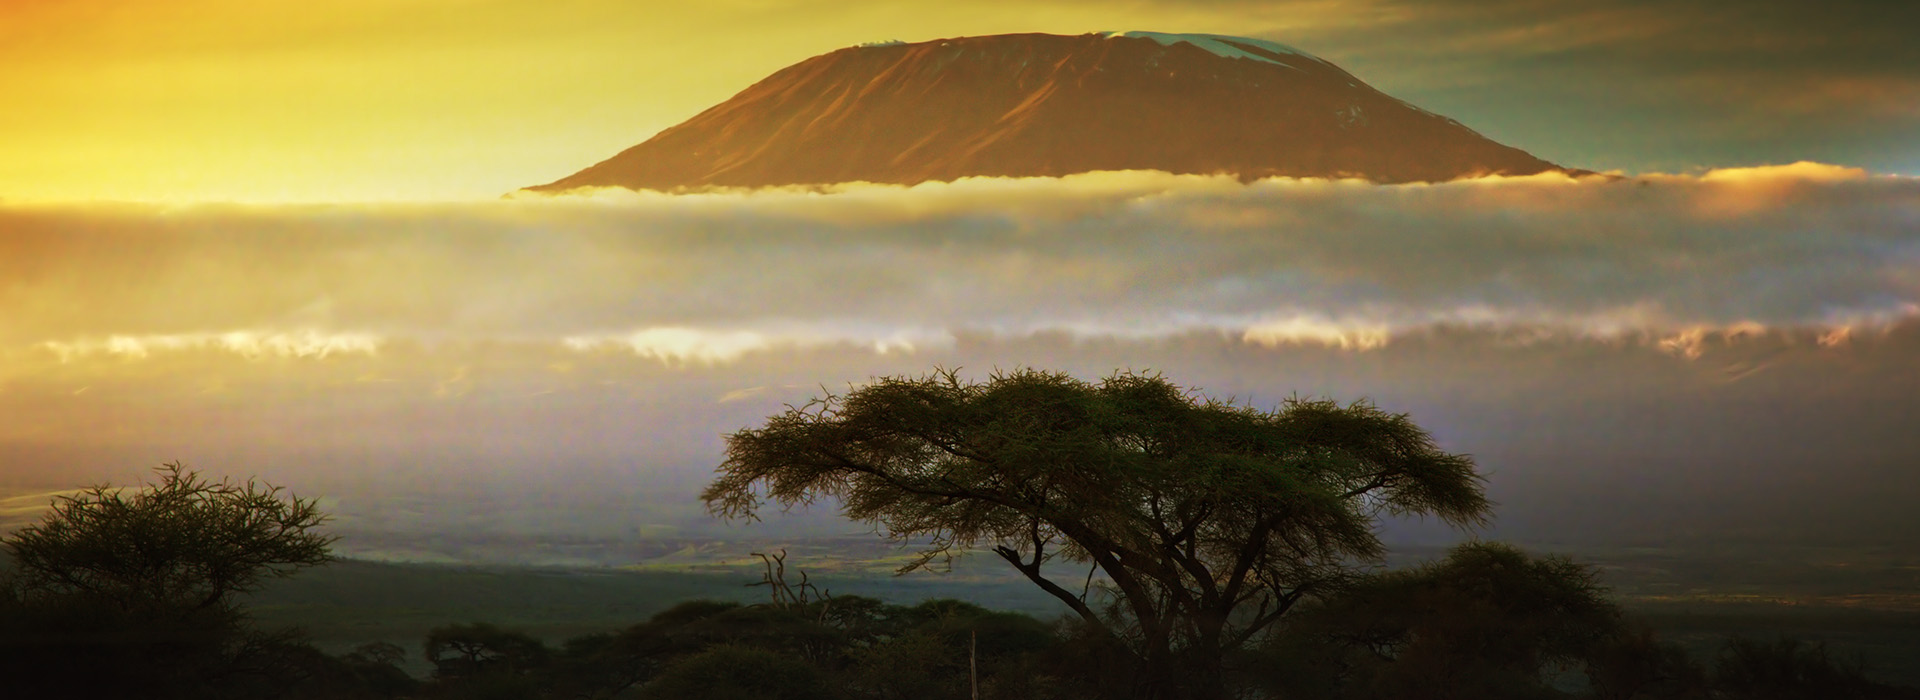 Kilimanjaro Facts